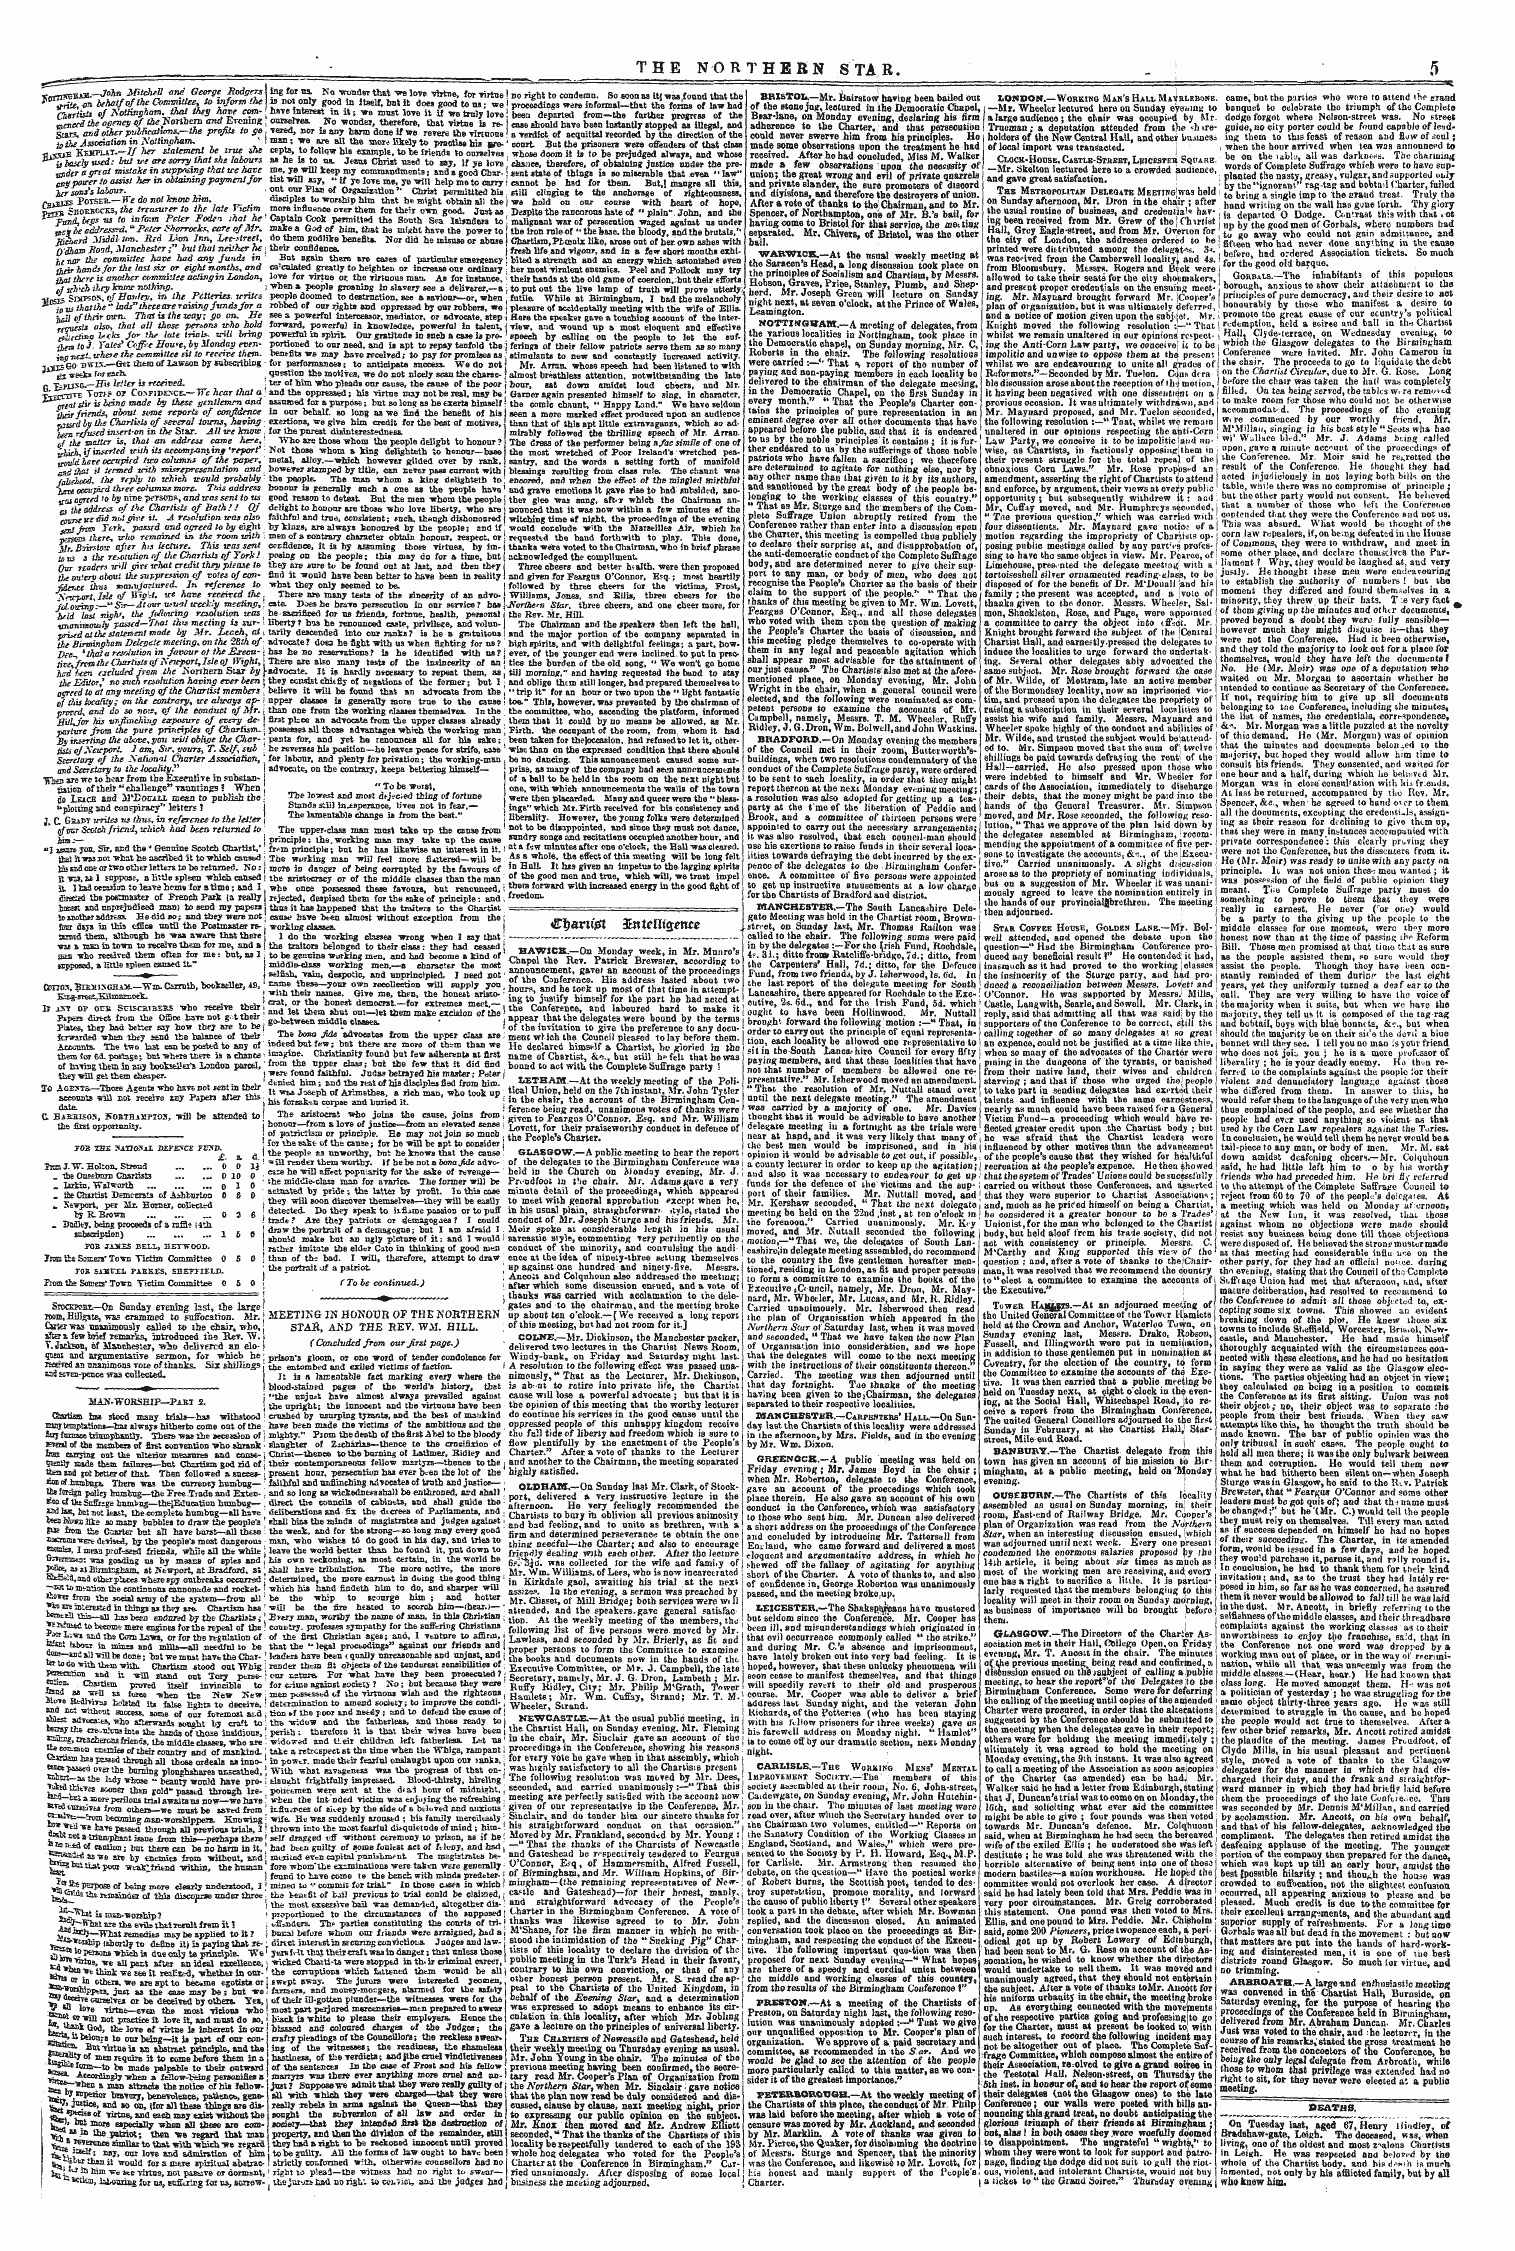 Northern Star (1837-1852): jS F Y, 4th edition - Deaths